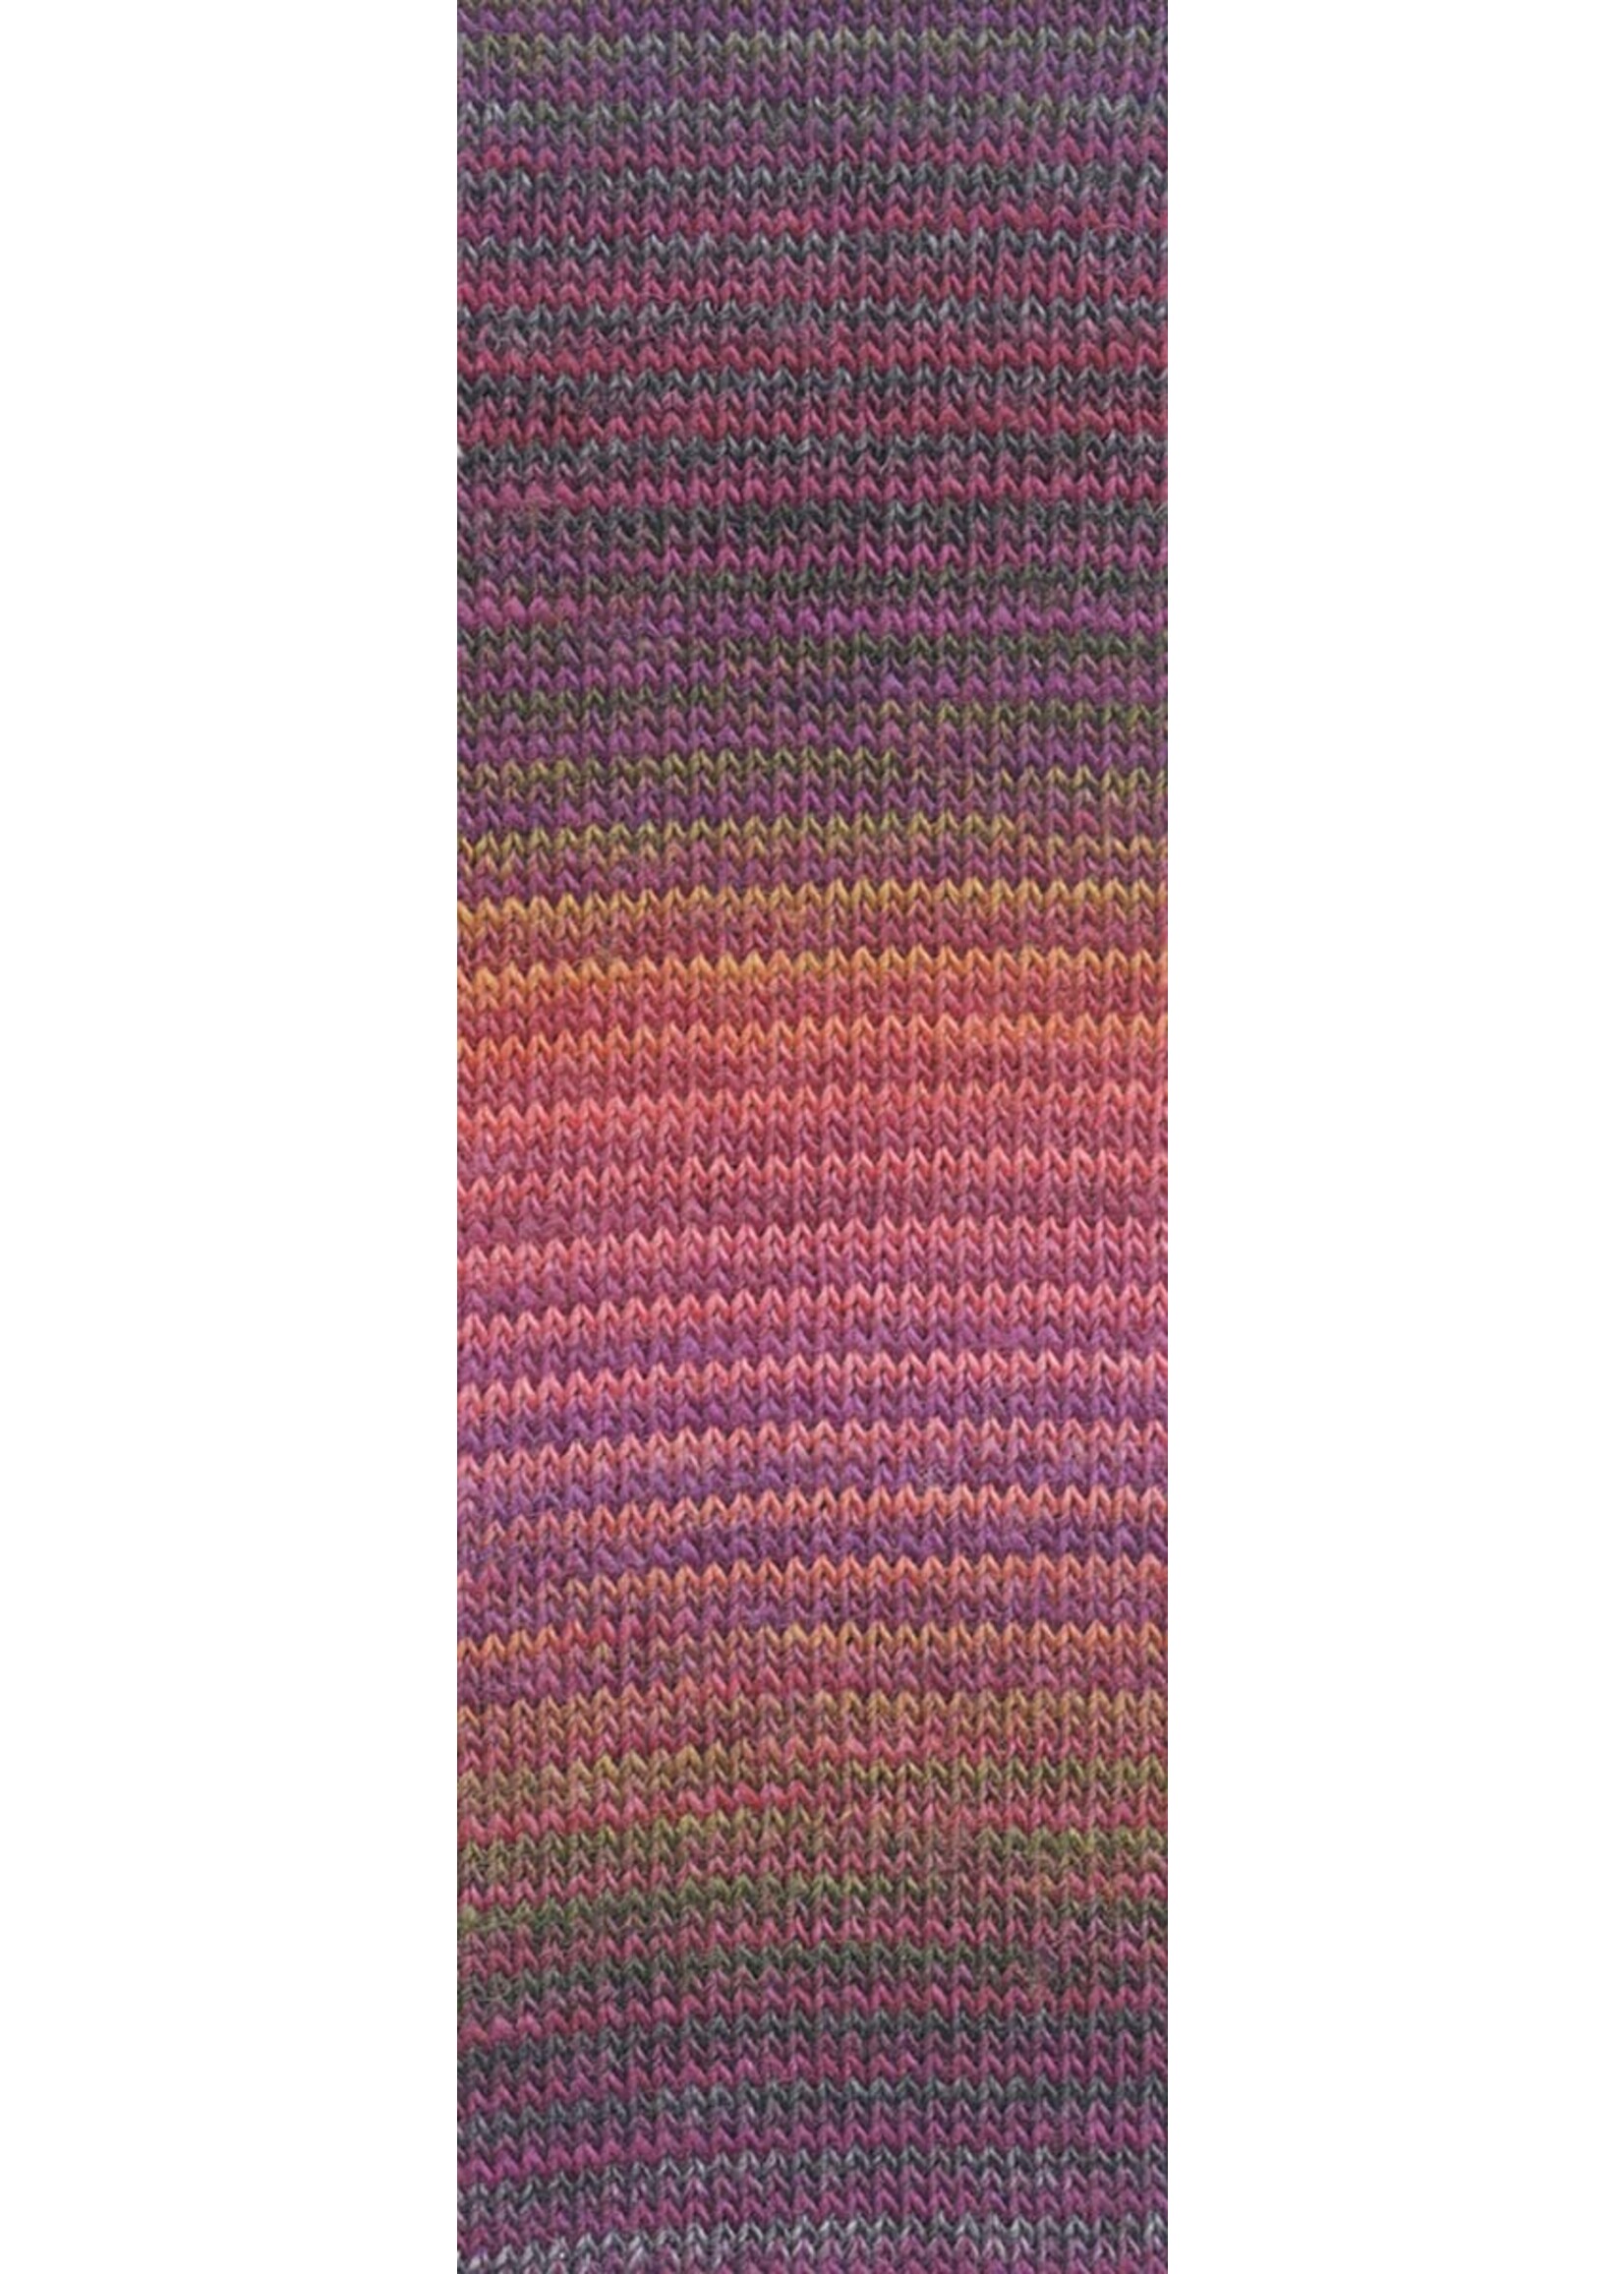 LangYarns Mille Colori Socks & Lace Luxe - 0204 bordeaux/donker groen/zalm